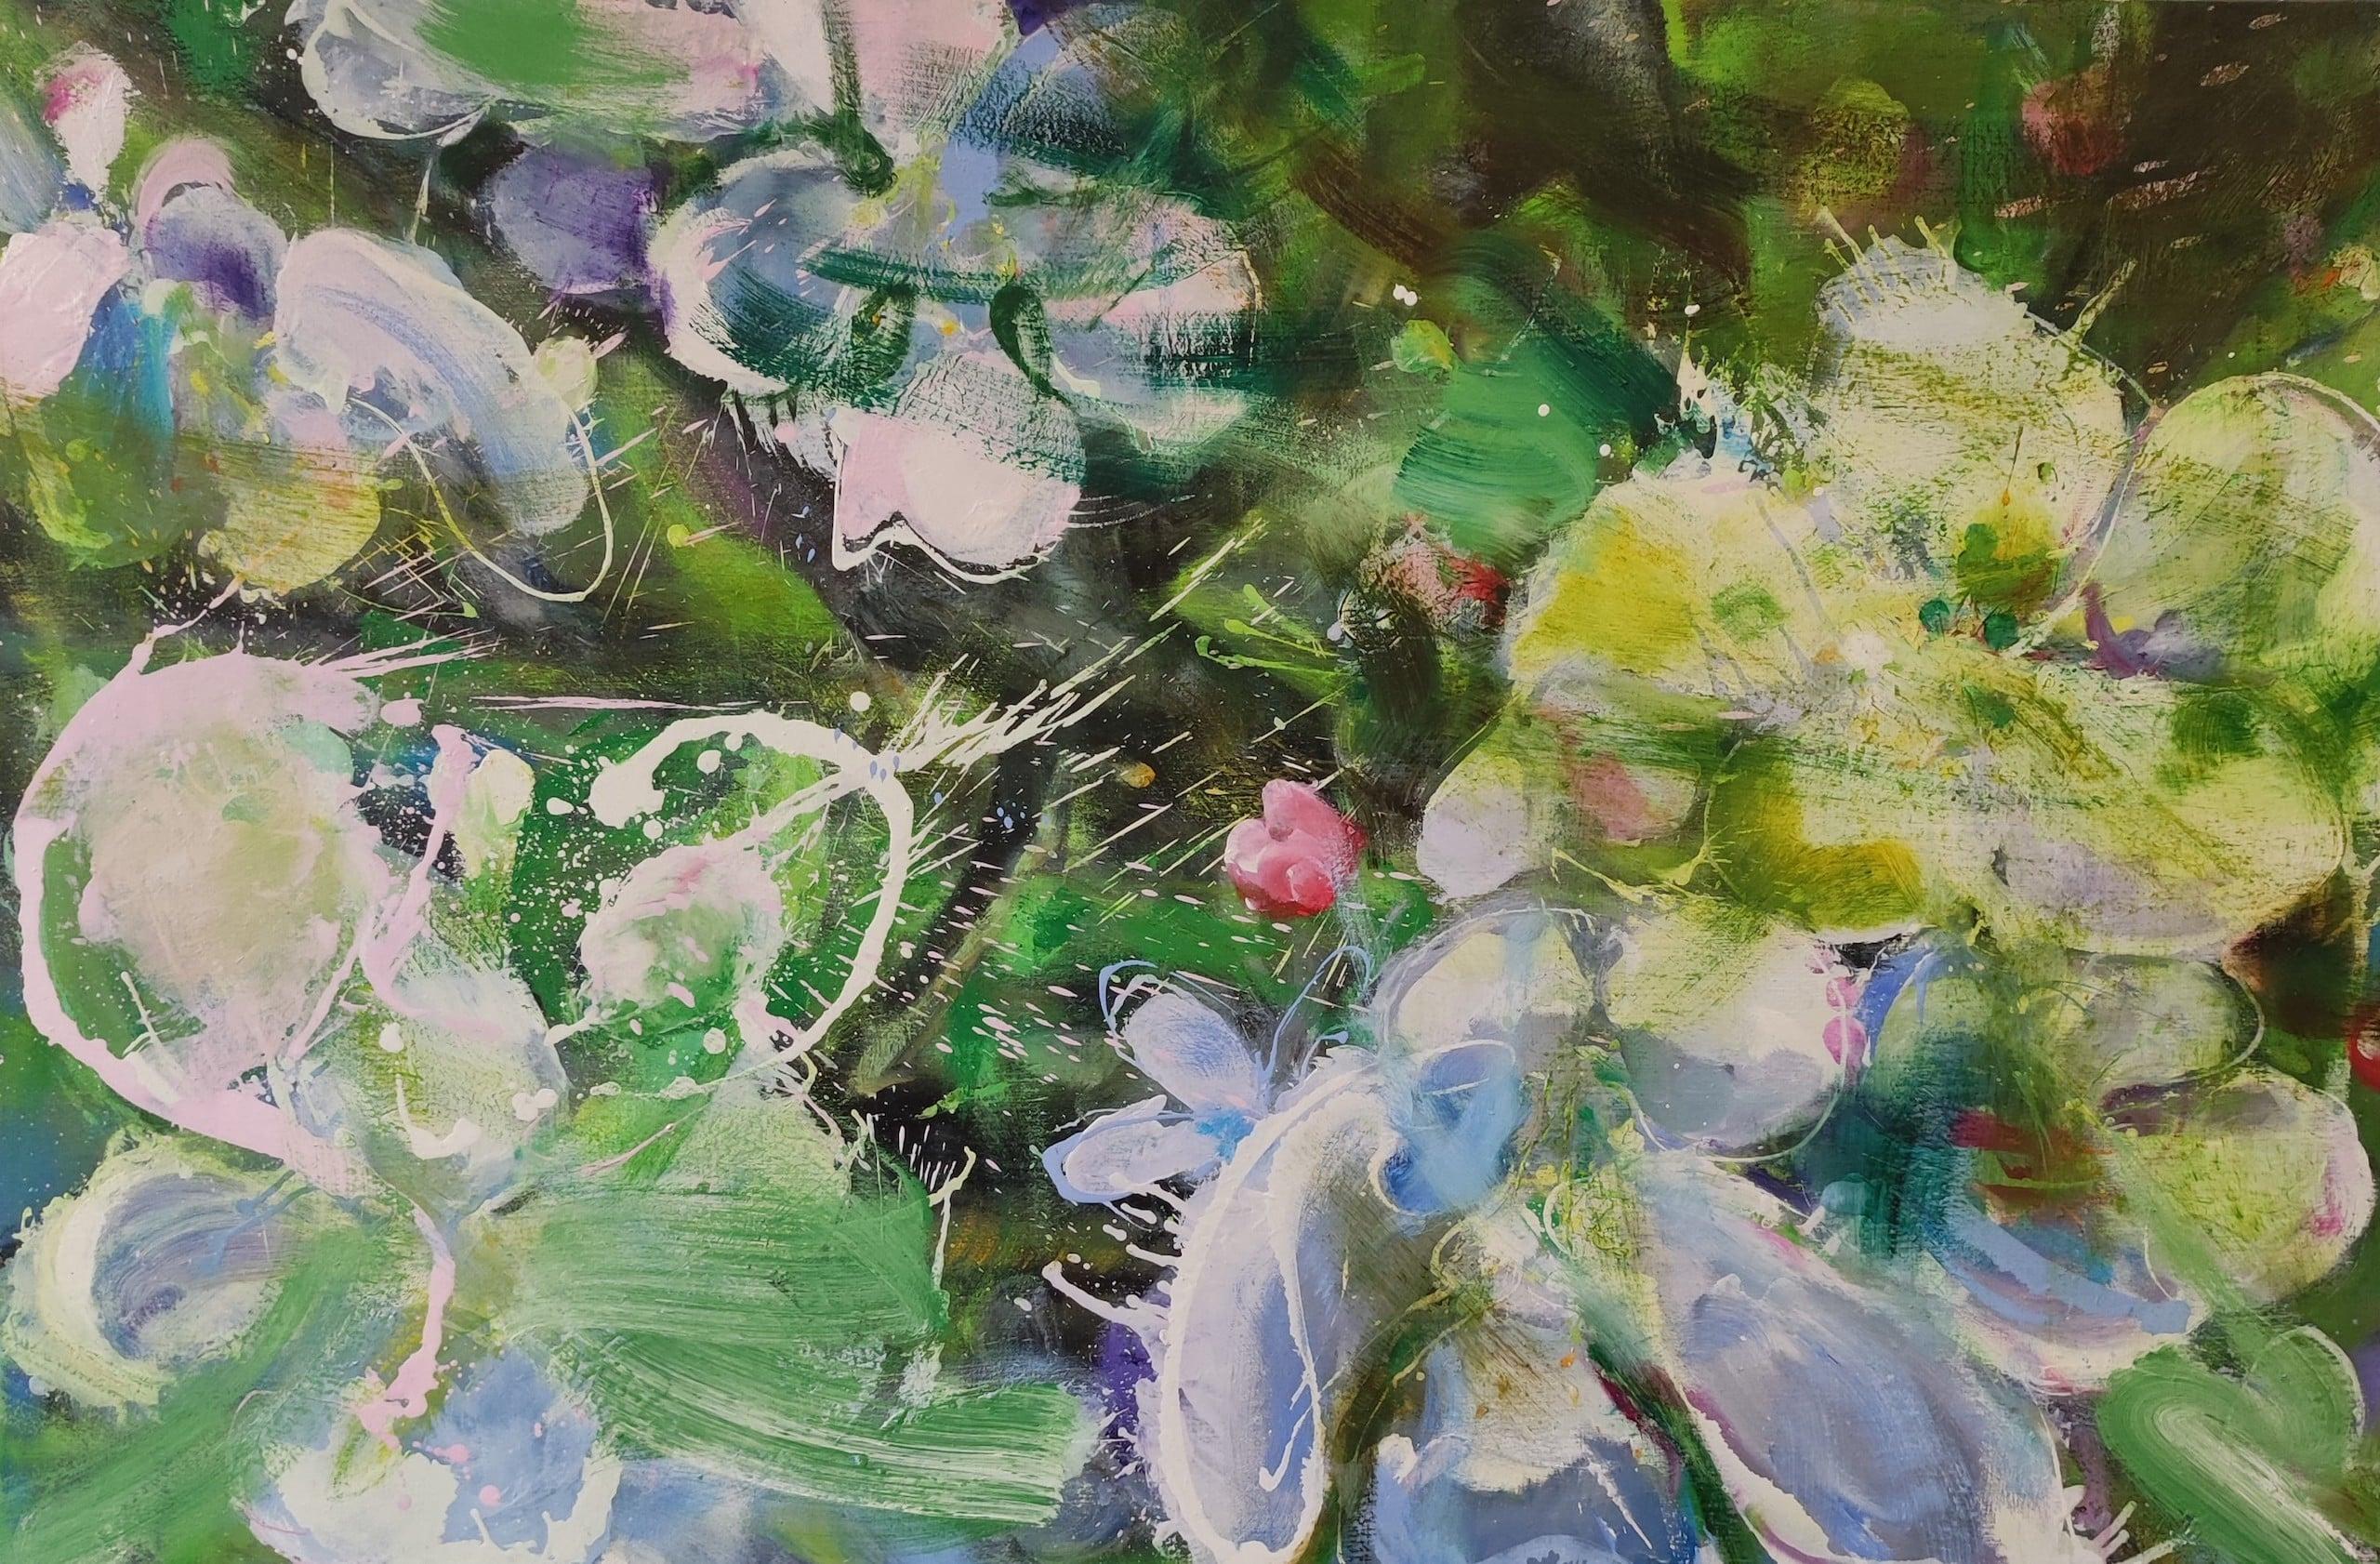 Spring (2023) des französischen zeitgenössischen Künstlers Christophe Dupety. Öl auf Leinwand, H 80 cm  B 120 cm.
Diese Serie konzentriert sich auf florale Motive: Mohnblumen, Catalpa-Blüten oder Spindeln. Christophe Dupety ist auf der Suche nach